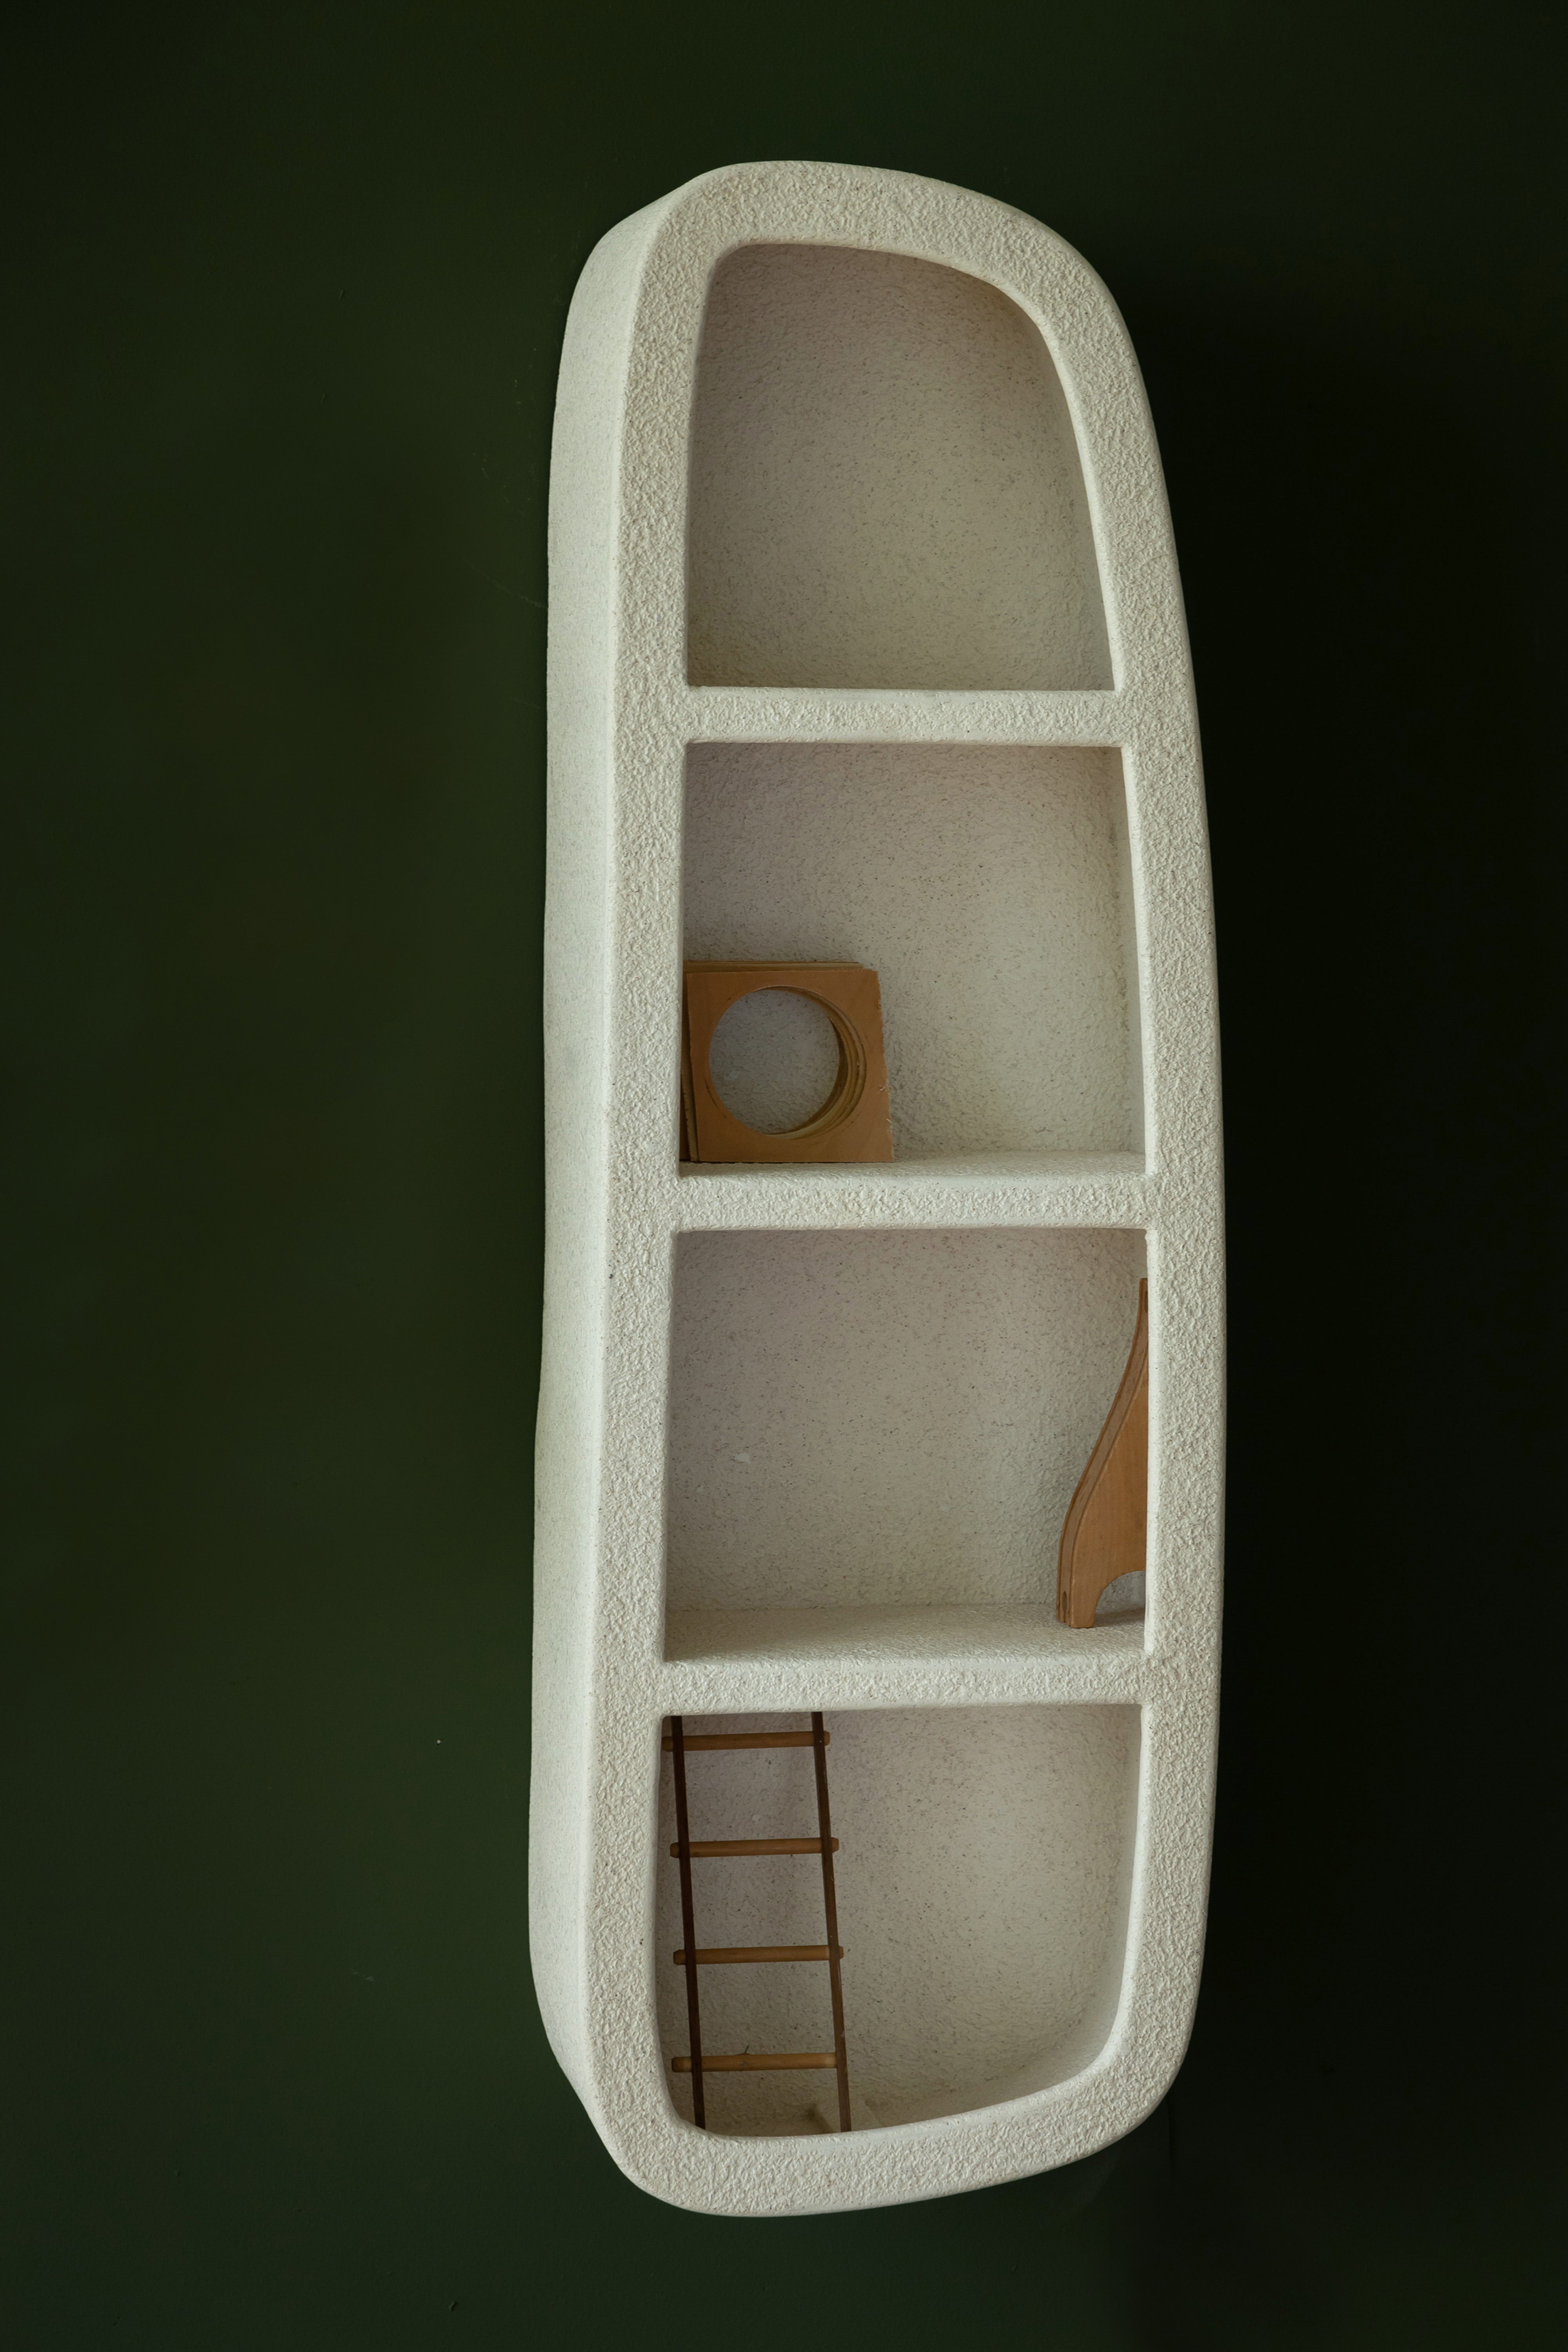 Wandregal Veda 3 Shelves in  präsentiert im Onlineshop von KAQTU Design AG. Wandregal ist von Dutchbone